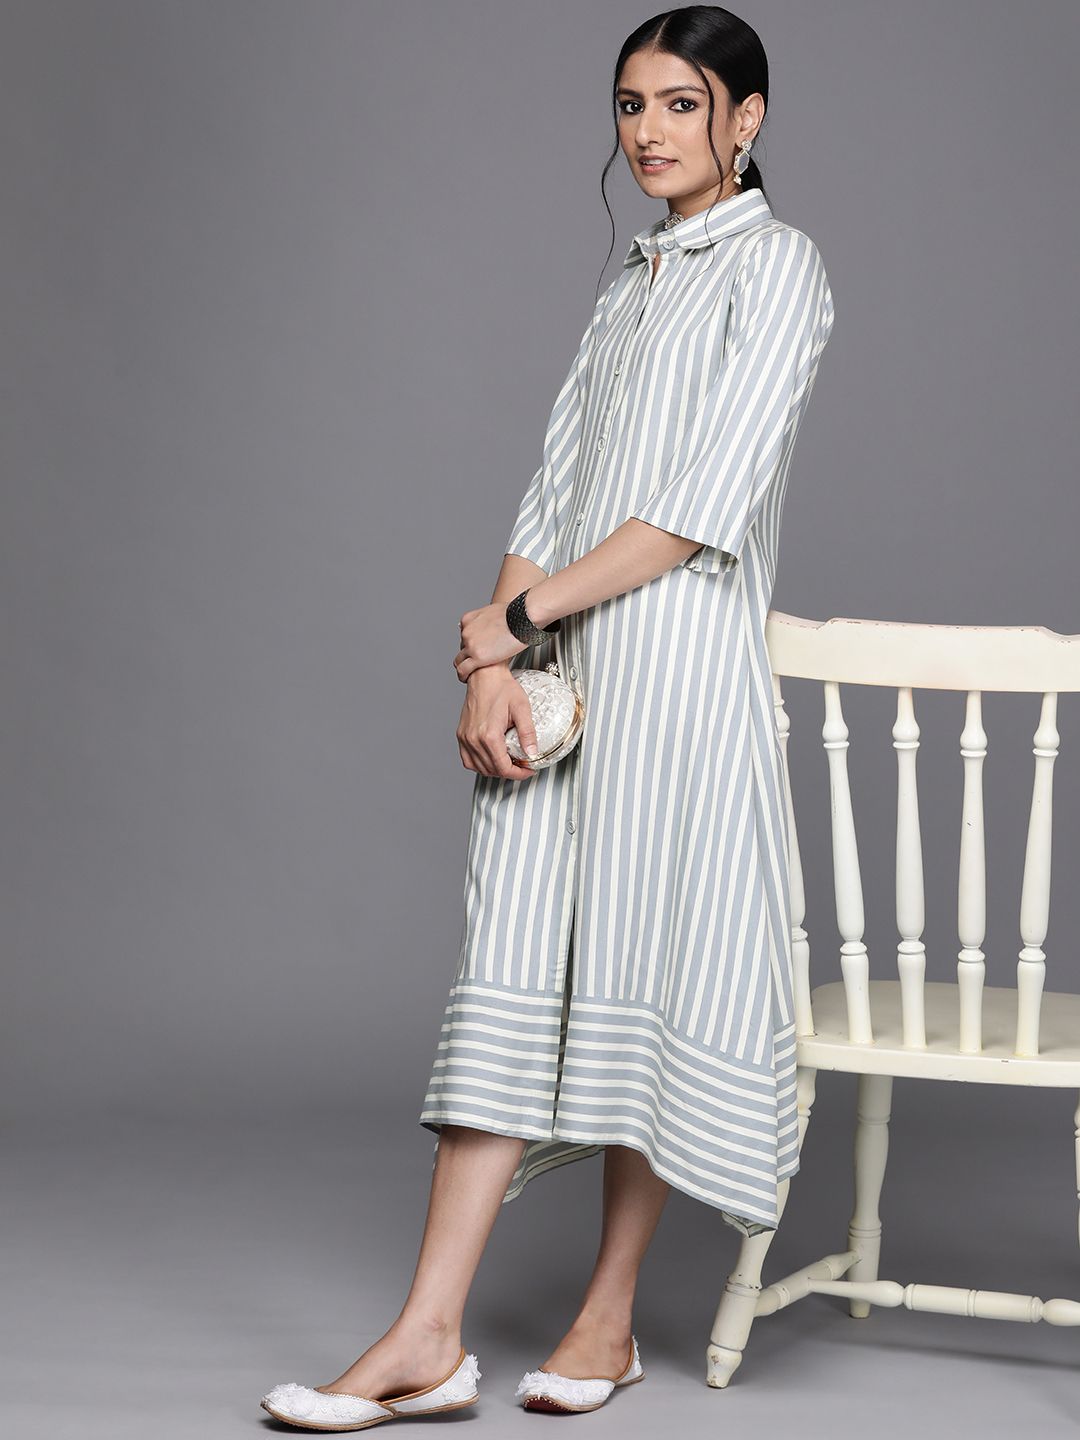 Libas Grey & White Striped Midi Shirt Dress Price in India